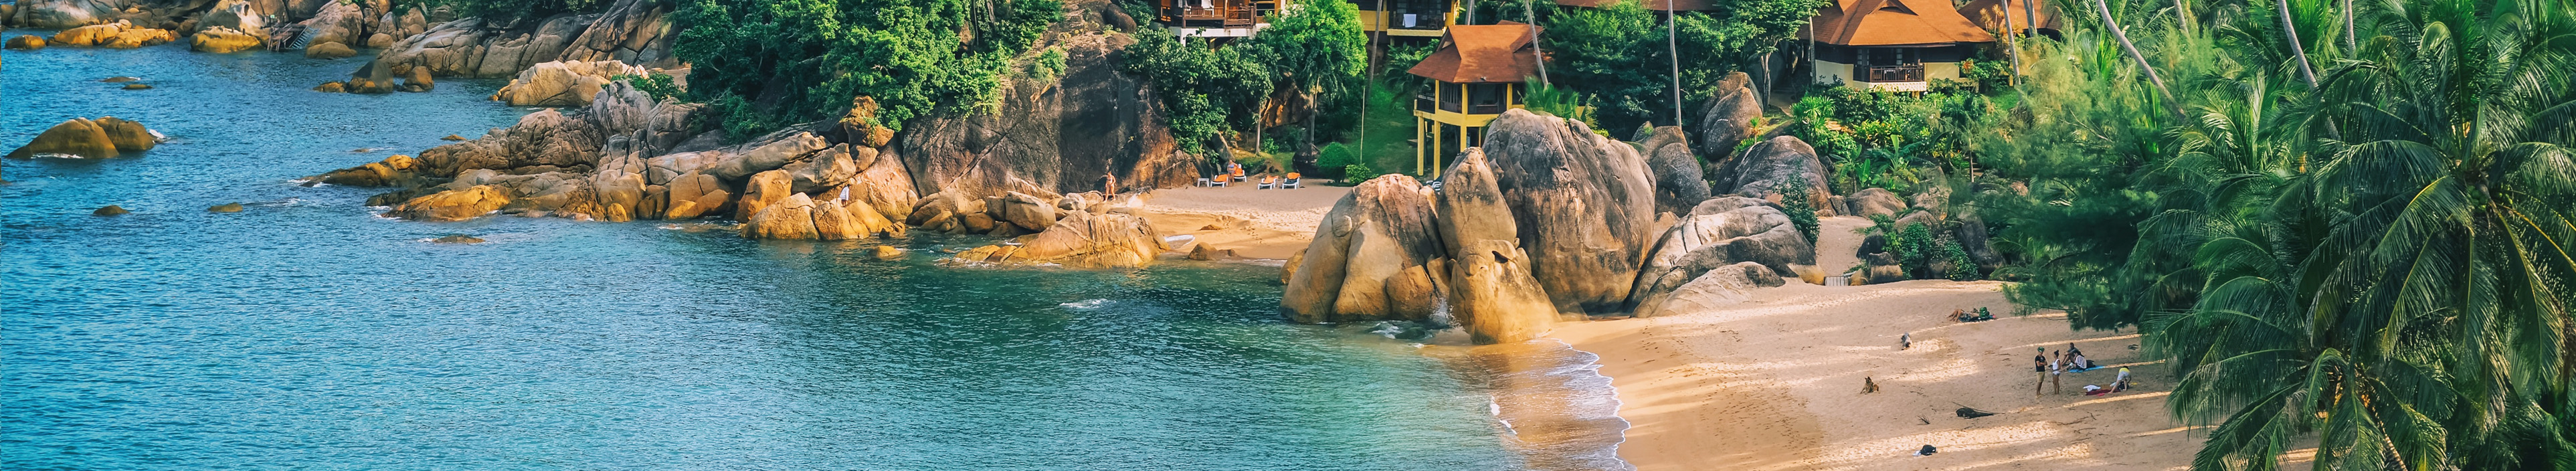 Panorama Blick auf die Ferienhäuser am tropischen Strand mit Palmen in Kho Samui, Thailand.